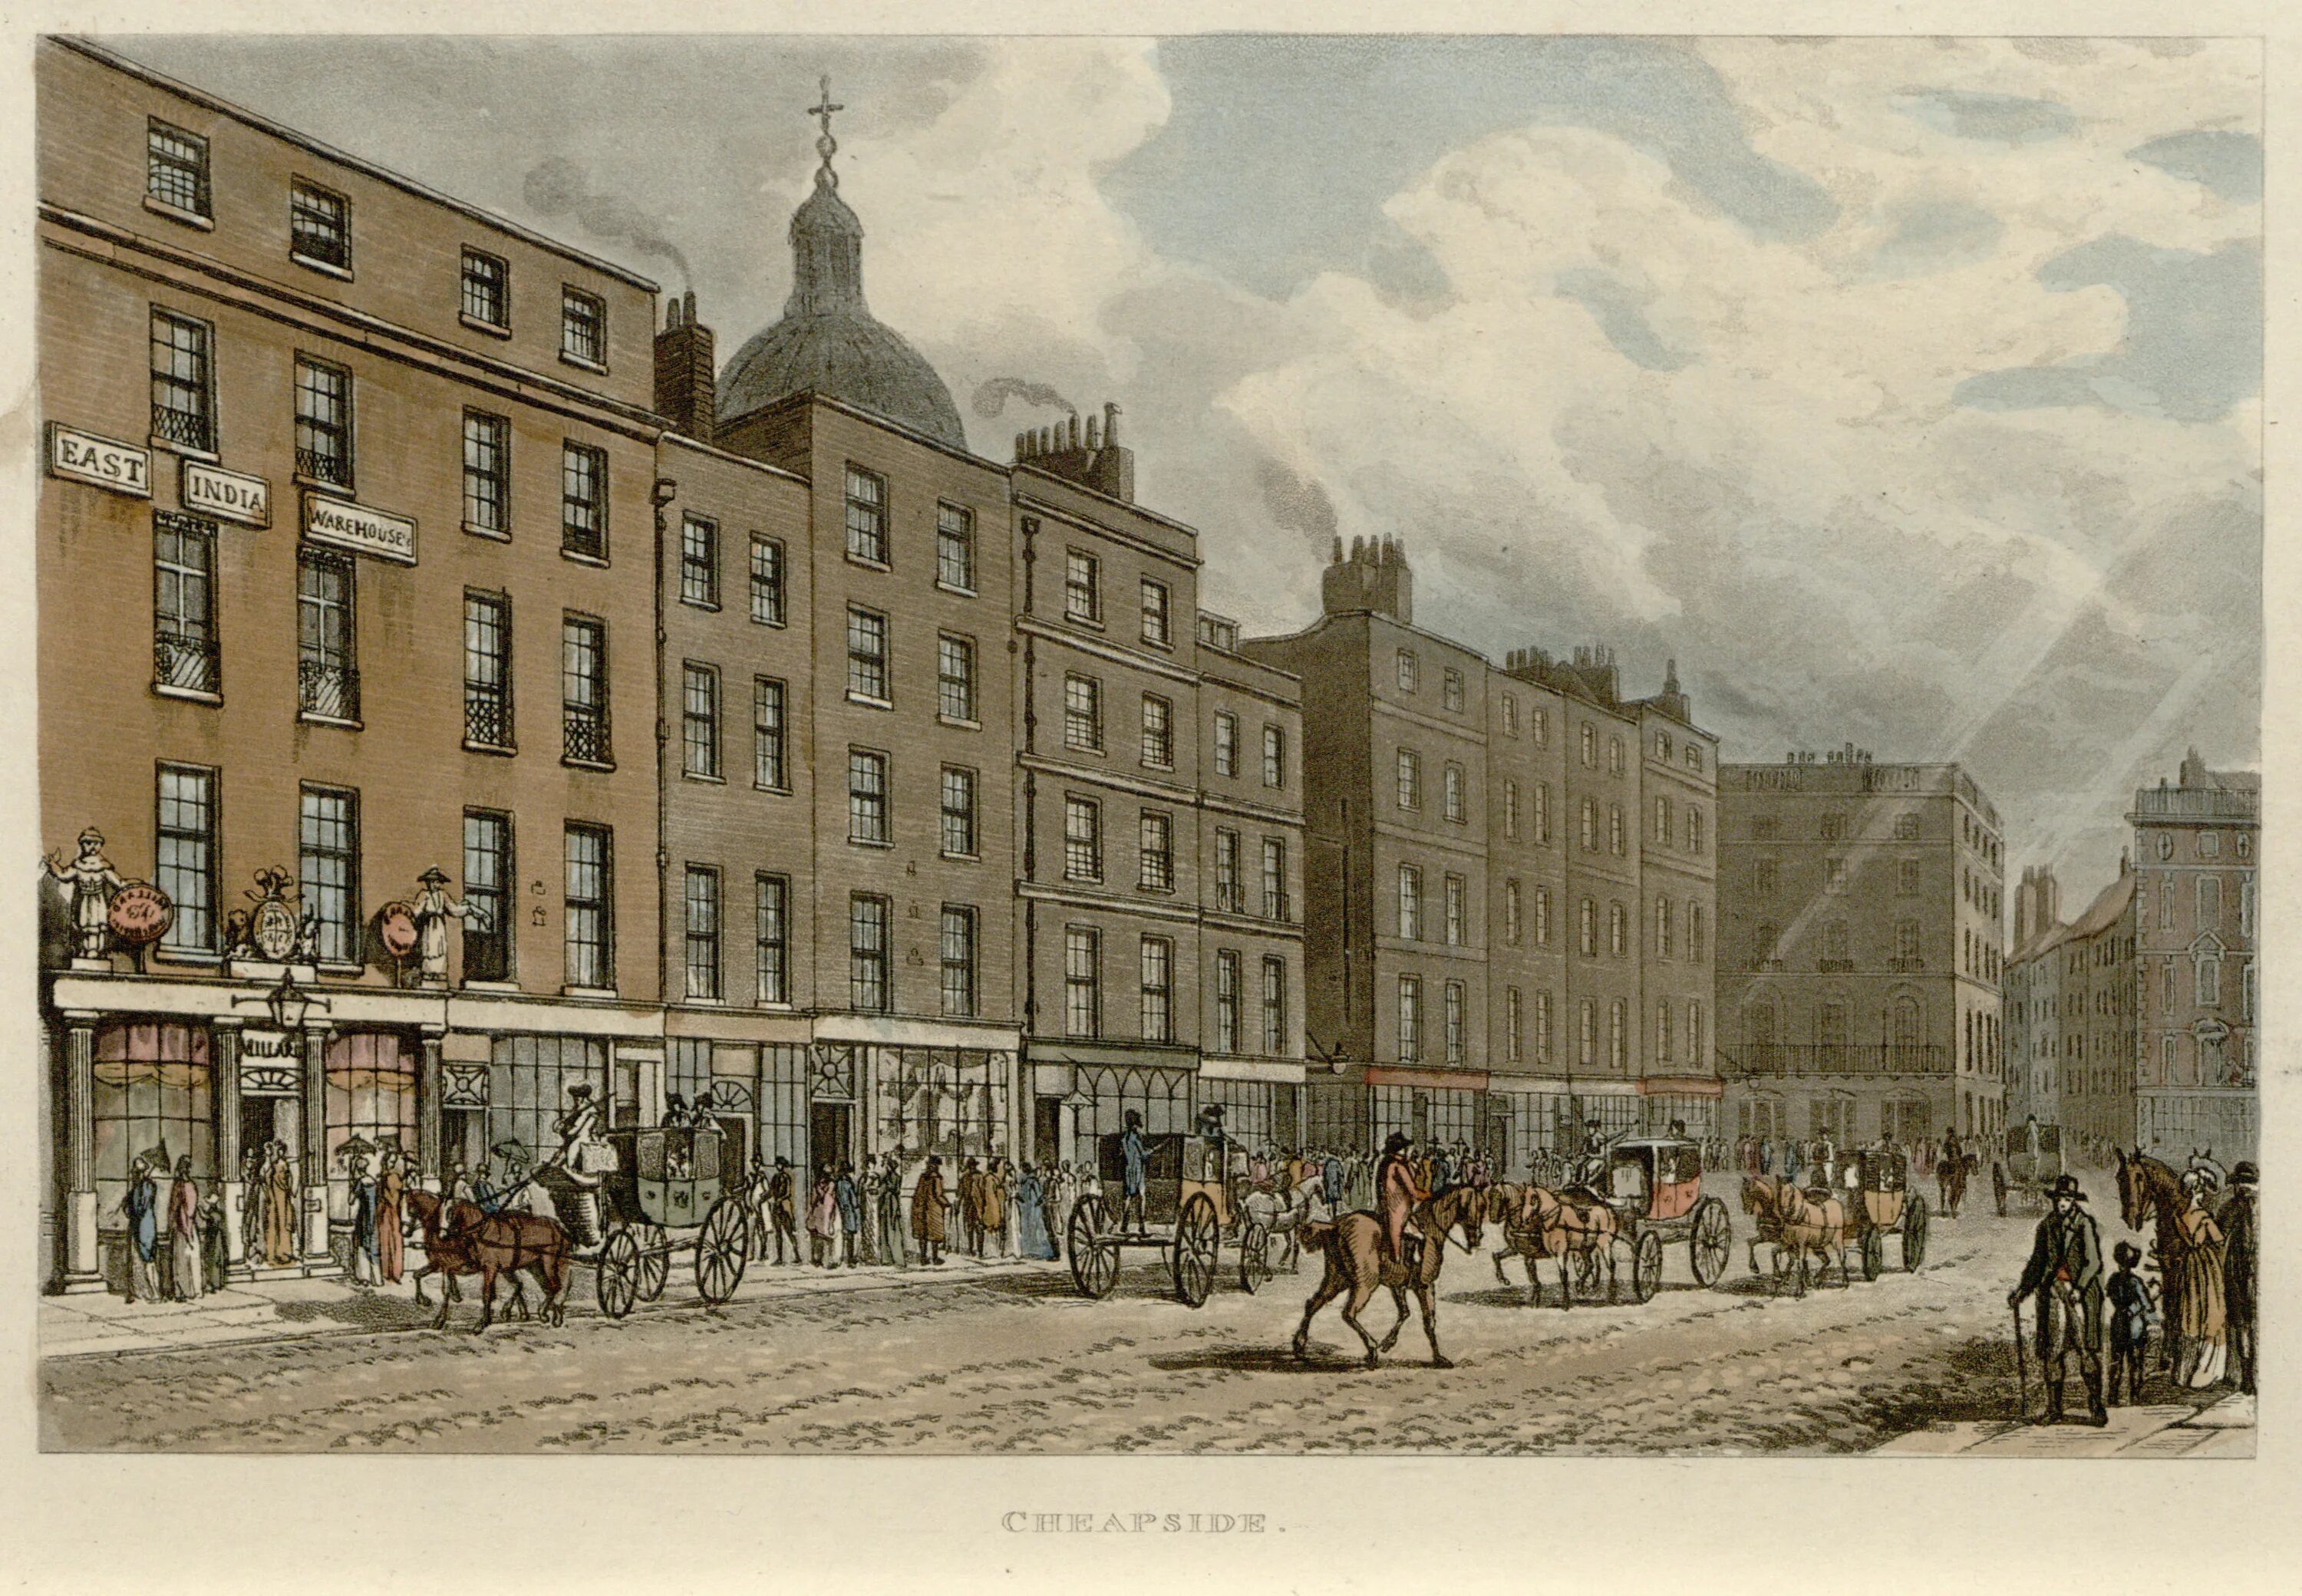 Uk 18. Лондон 1820 год. Чипсайд Лондон во времена Джейн Остин. Риджент-стрит в Лондоне в 1830-е. Англия 1813.